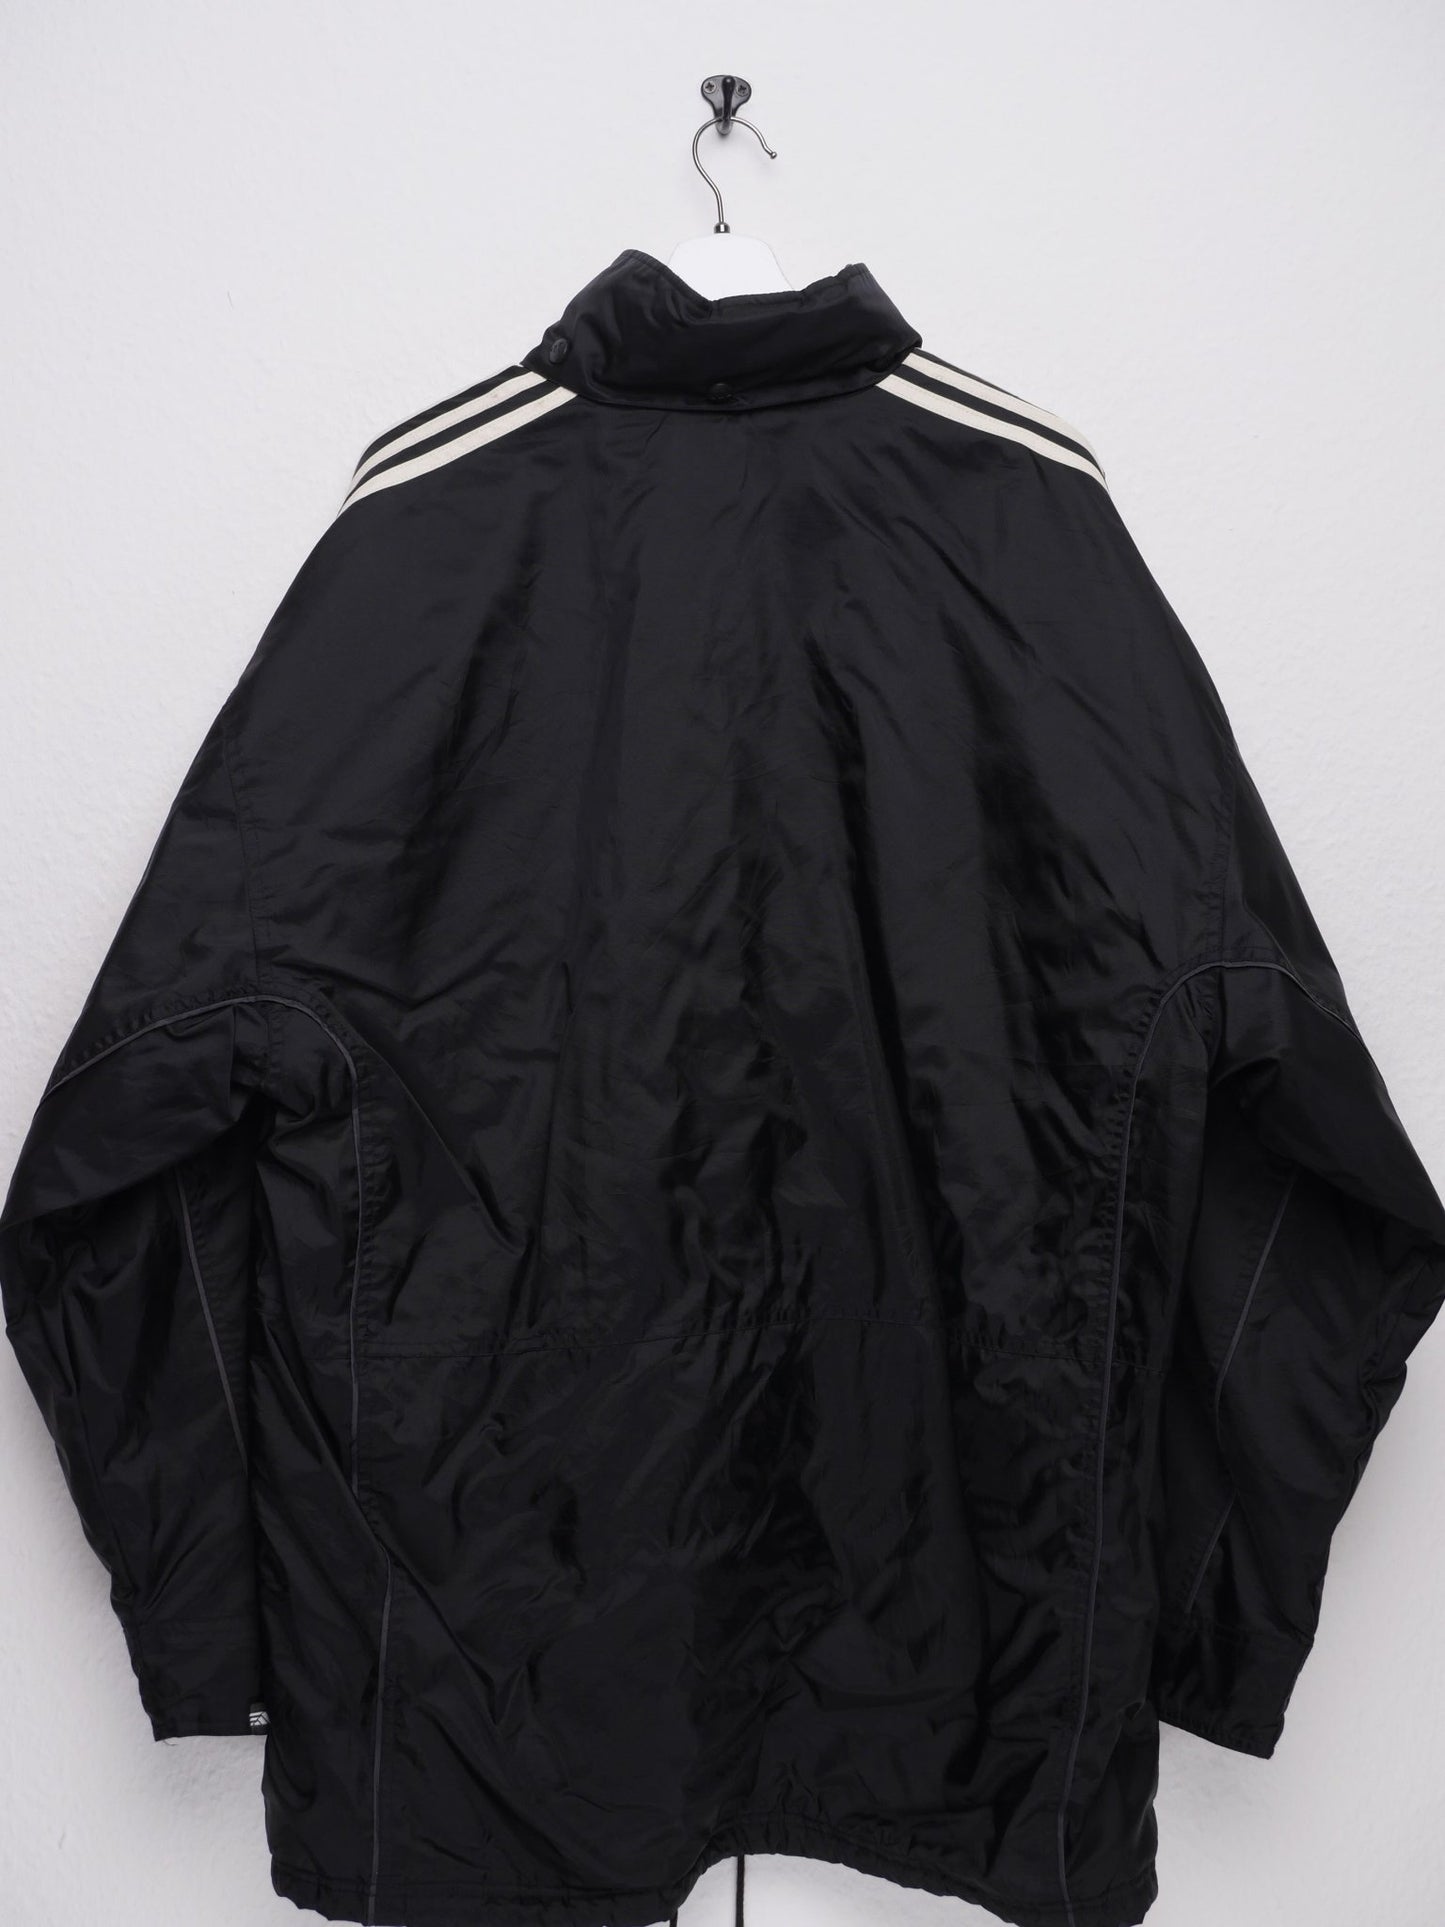 adidas embroidered Logo 'F.C. Fontaine' black oversized Jacke - Peeces